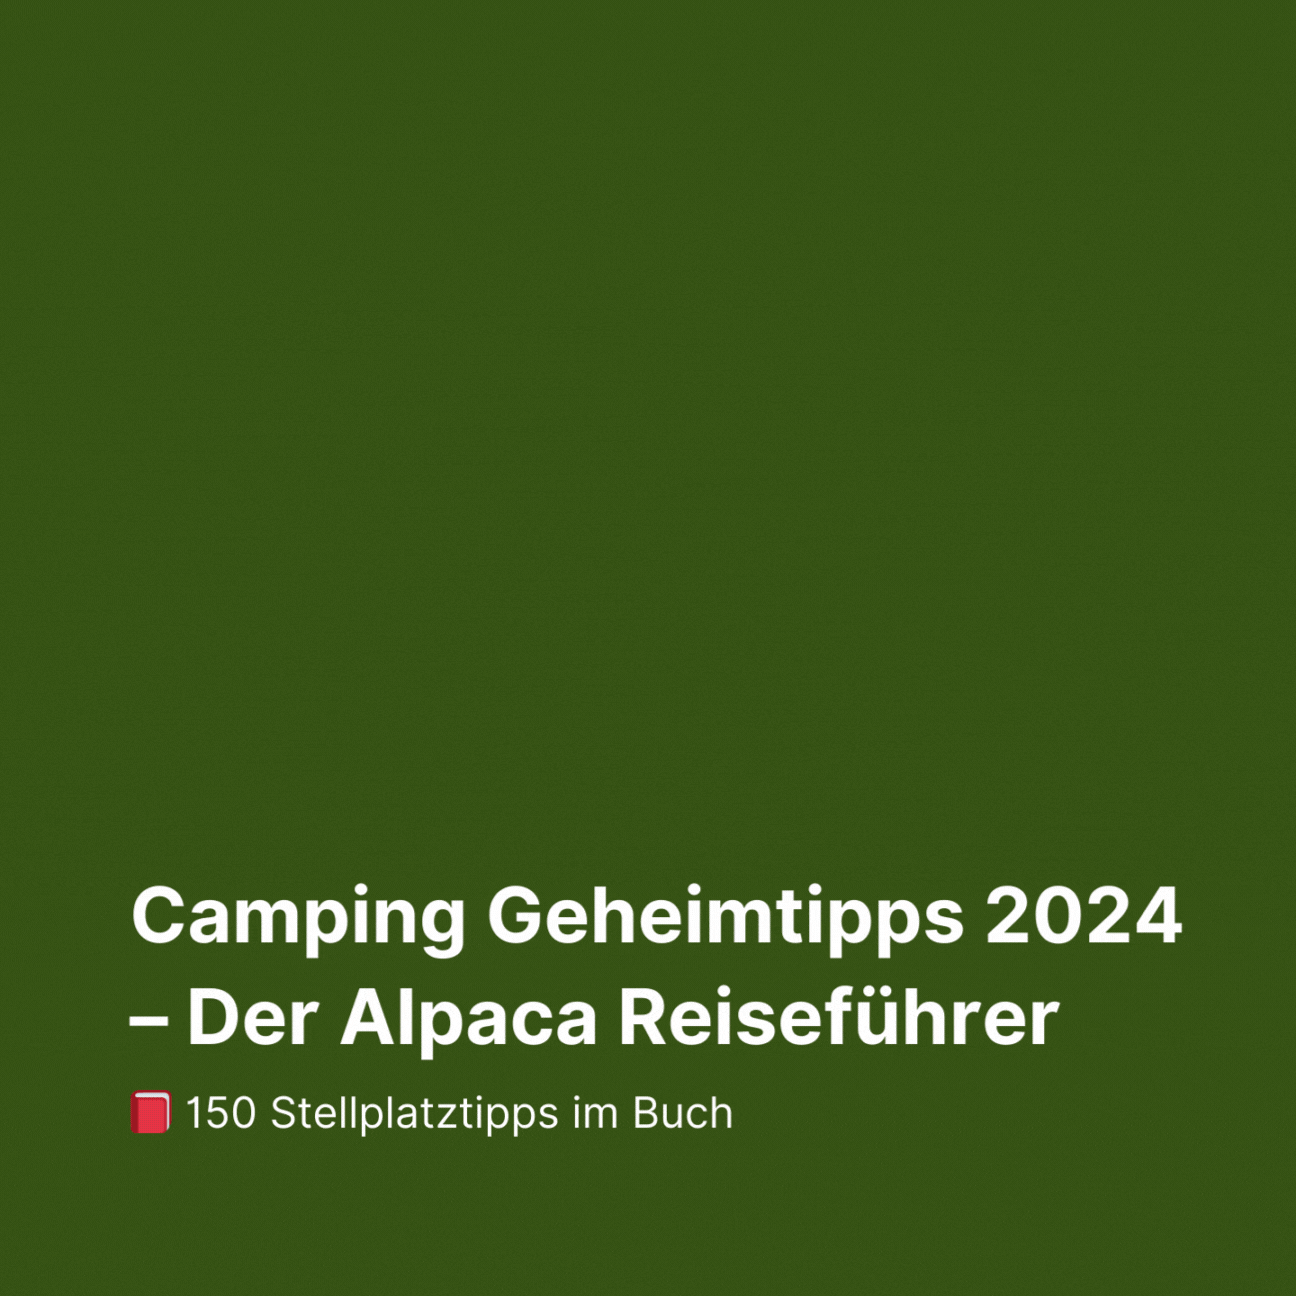 Camping Geheimtipps 2024 Buch